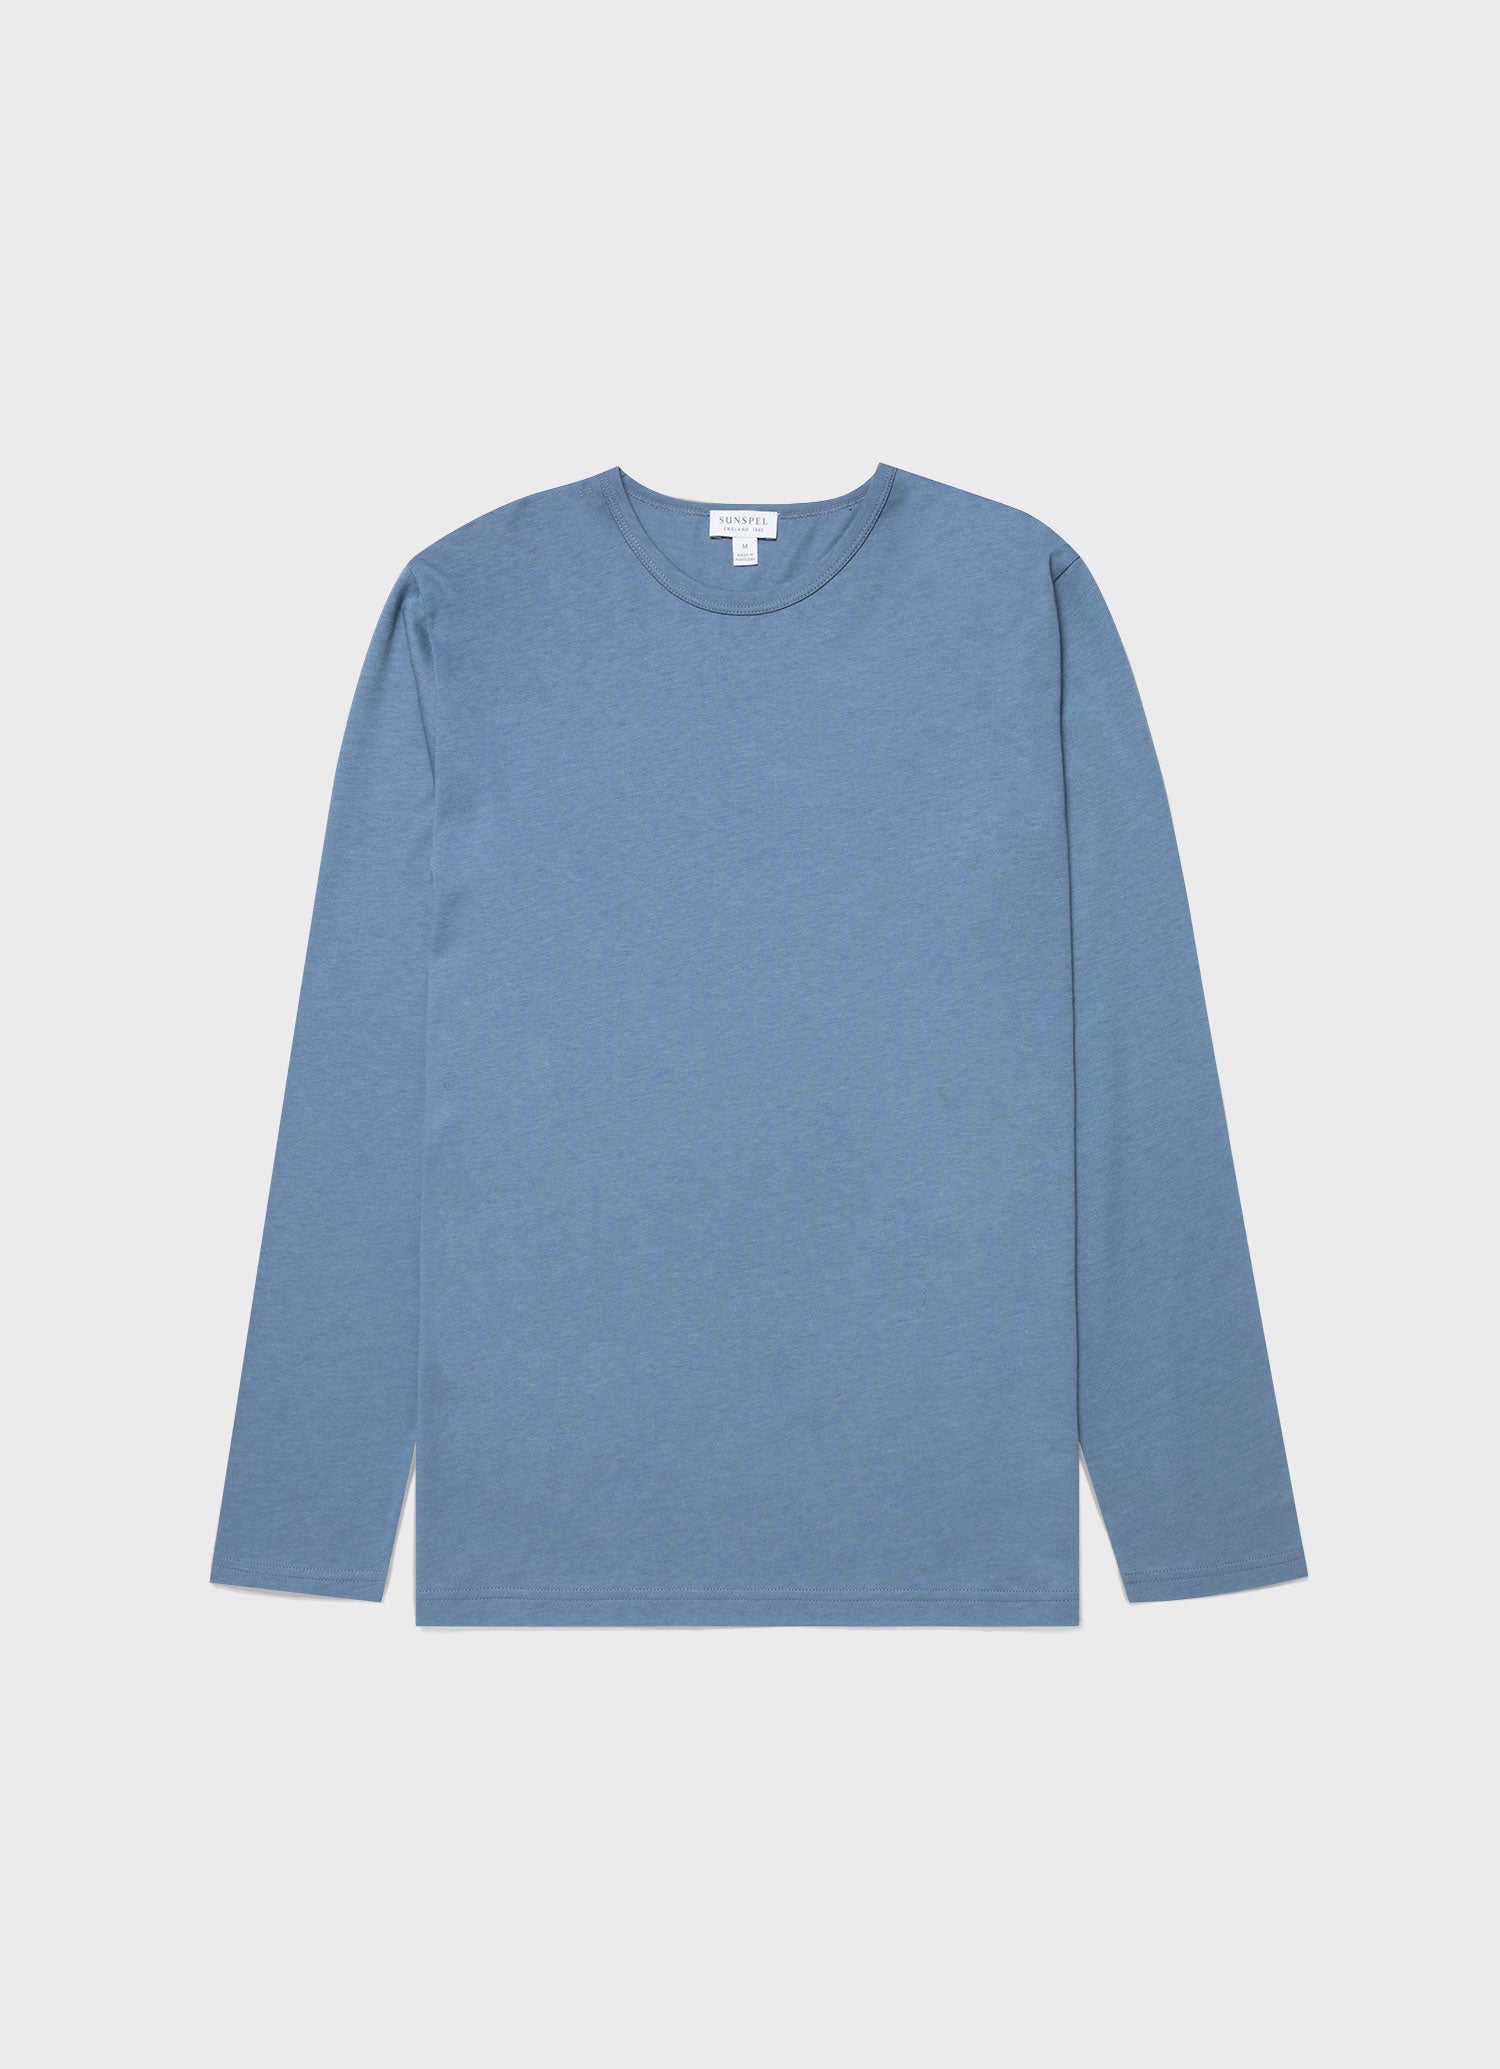 Men's Long Sleeve Cotton Modal Lounge T-shirt in Bluestone | Sunspel